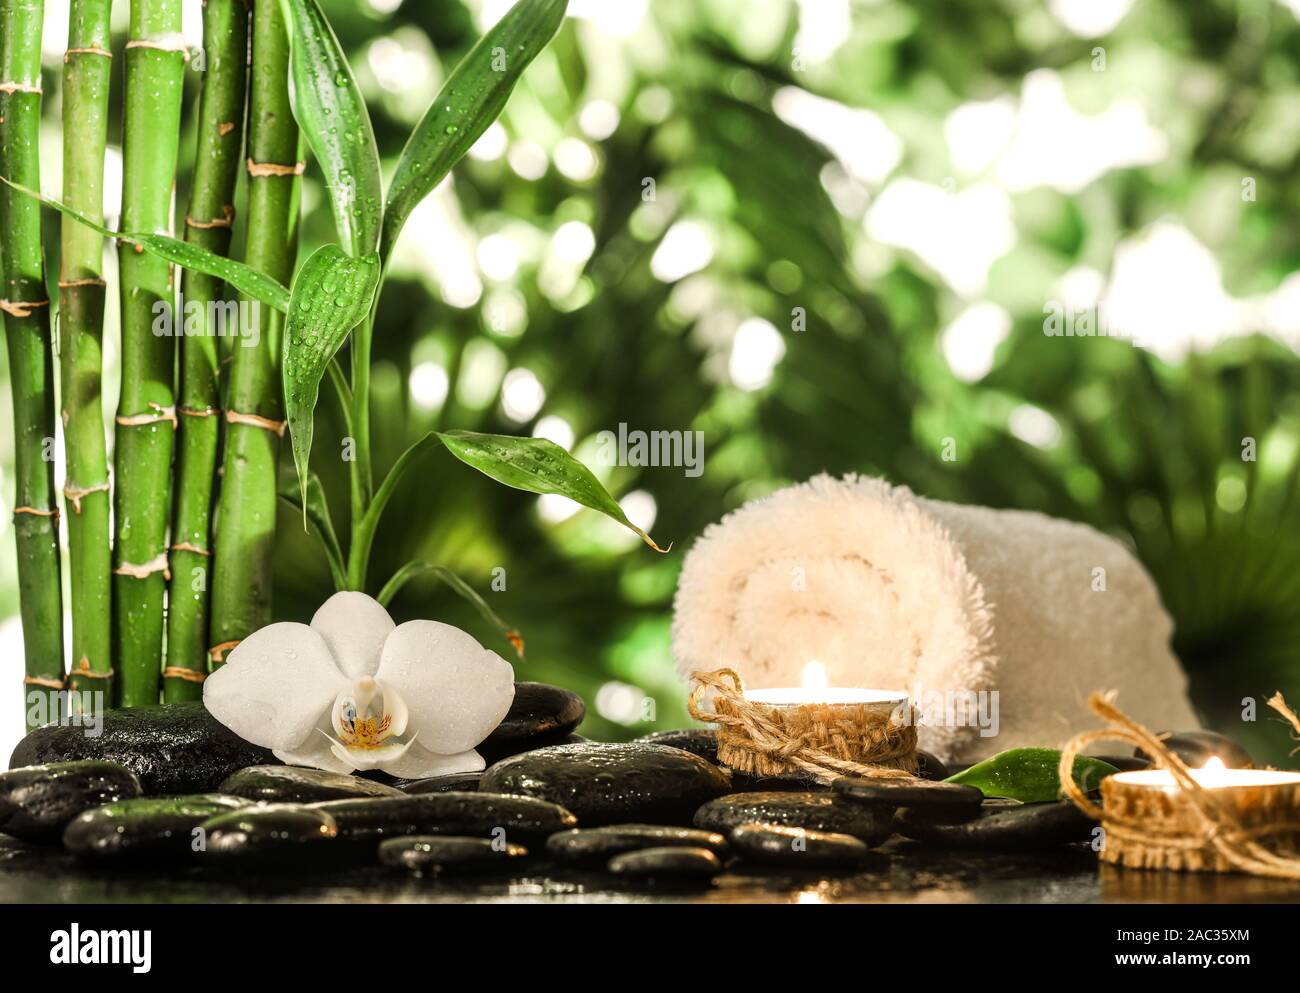 Grean Bambus Blätter, weiße Orchidee, Handtuch und Kerzen über schwarzen  zen Steine auf tropische Blätter Hintergrund Stockfotografie - Alamy